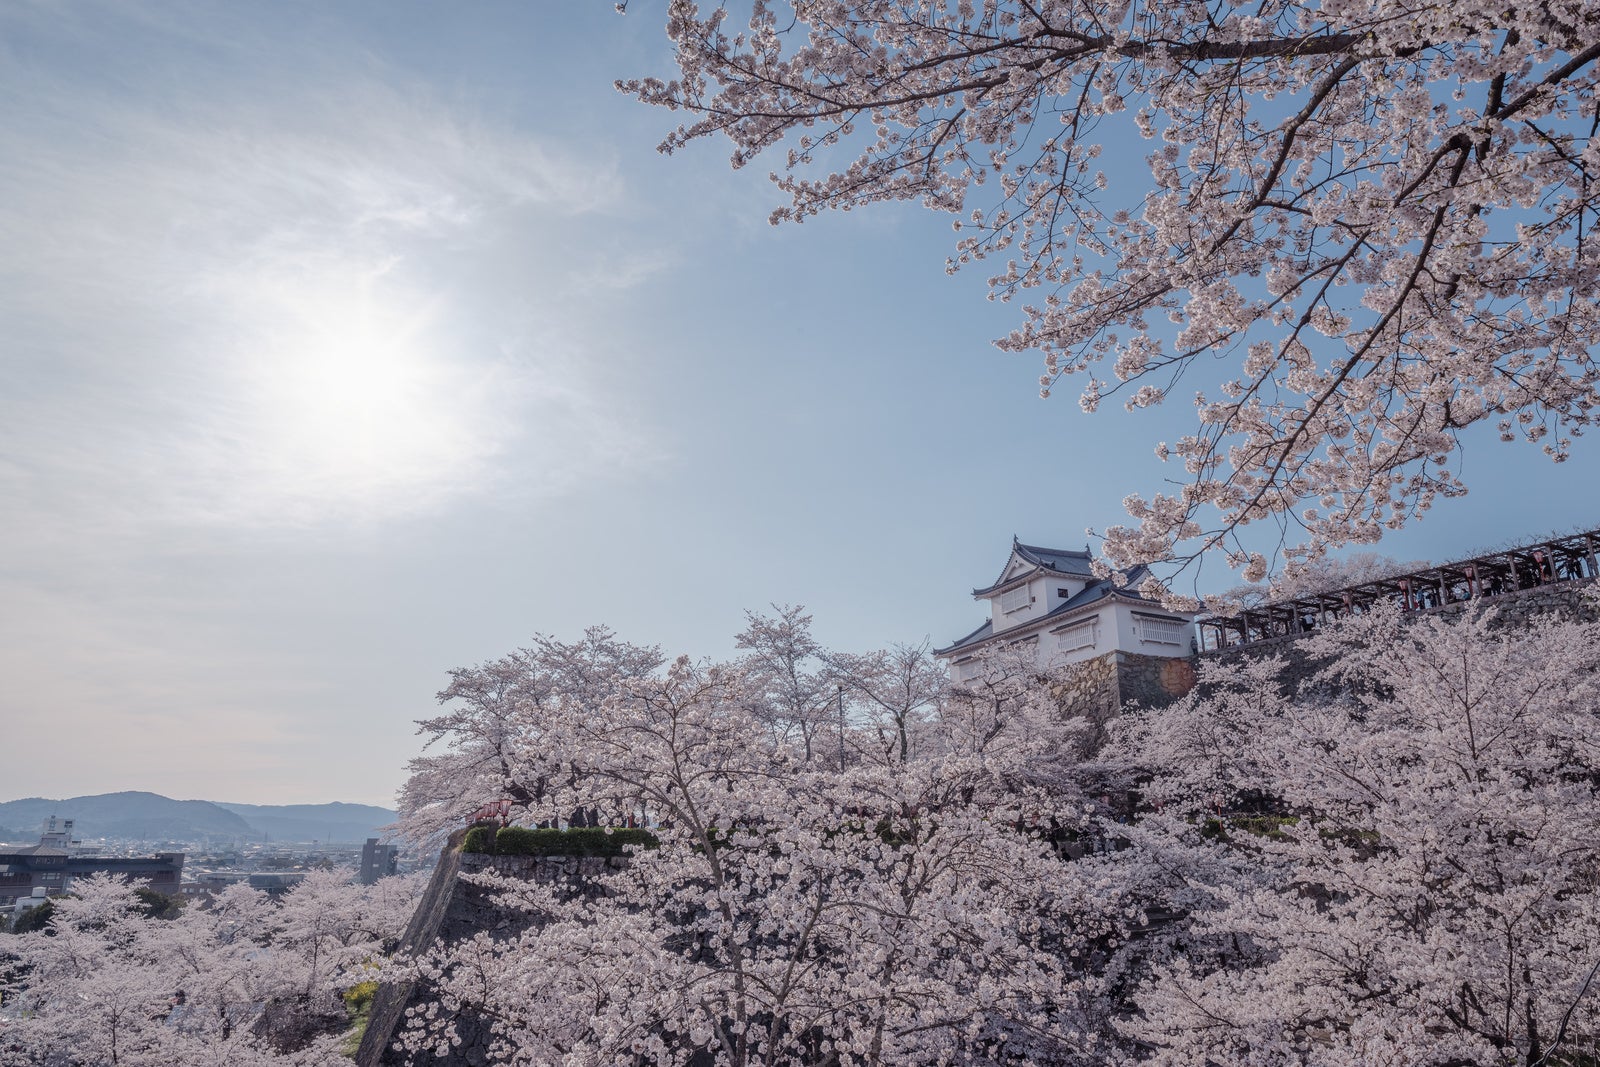 「津山城跡備中櫓と桜まつり | フリー素材のぱくたそ」の写真